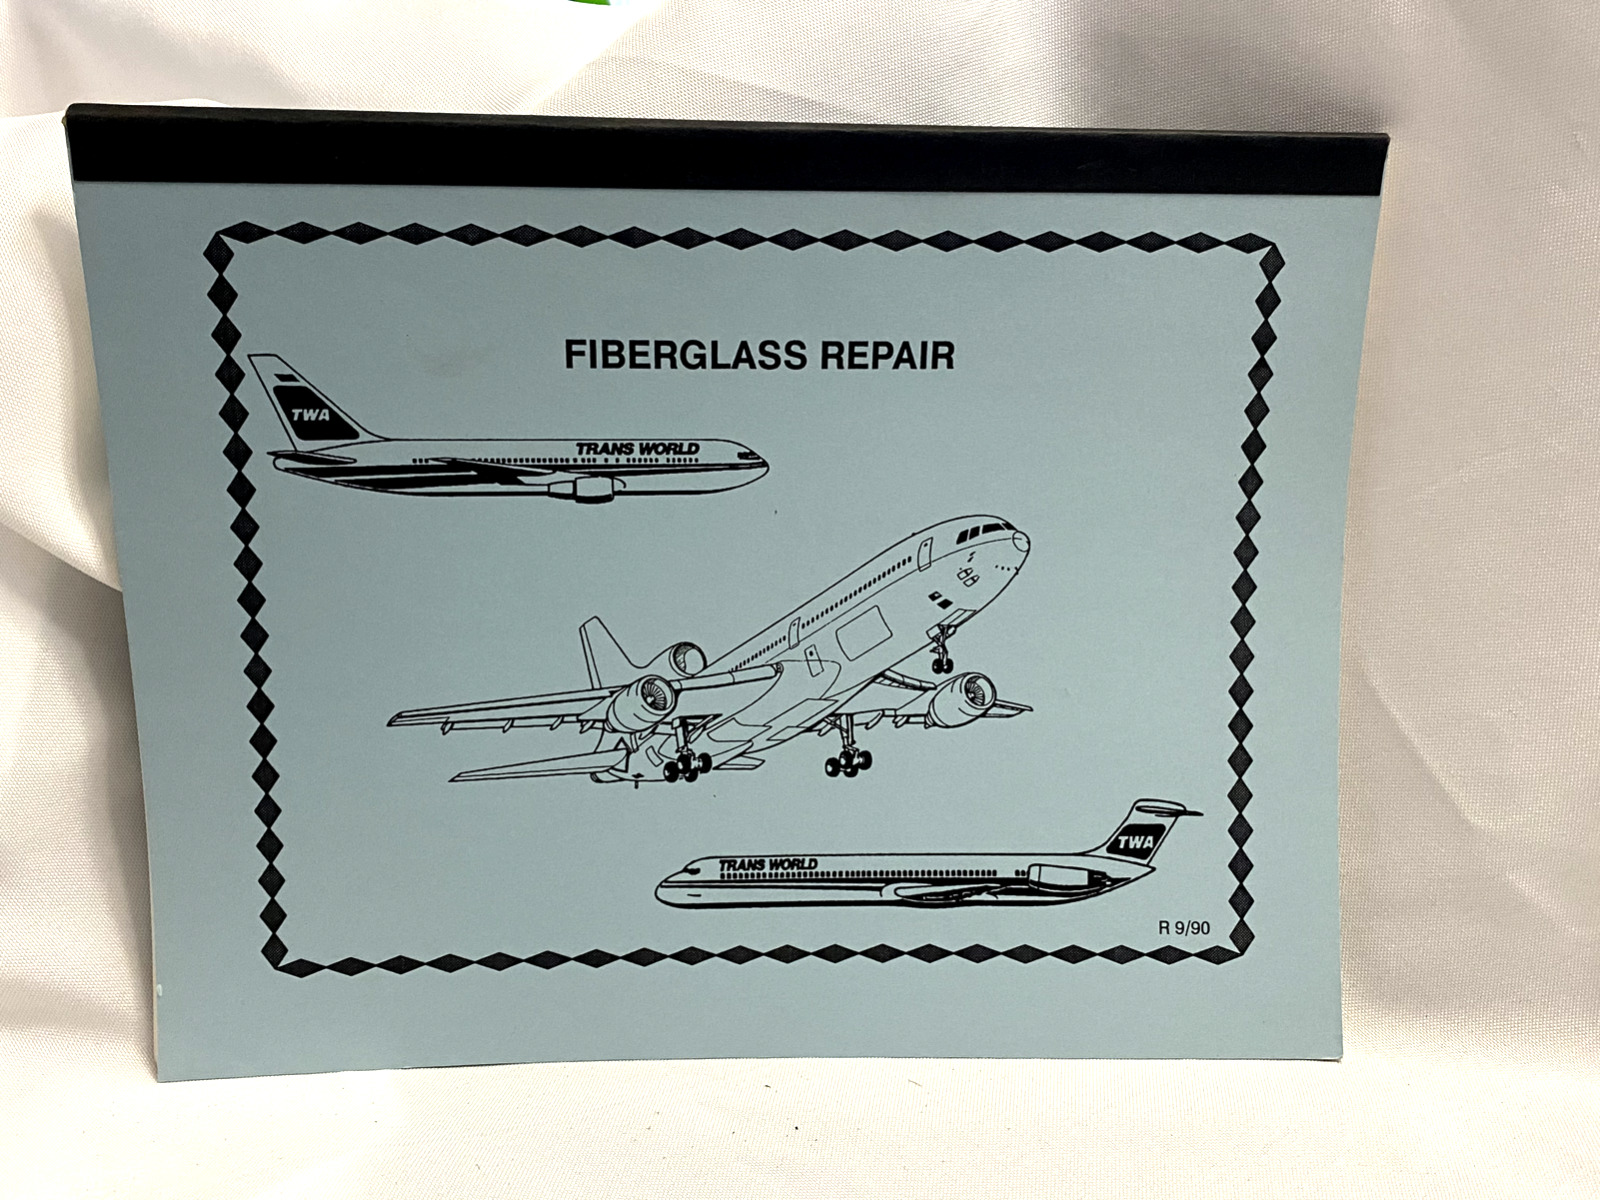 Vintage TWA Airlines Fiberglass Repair training manual